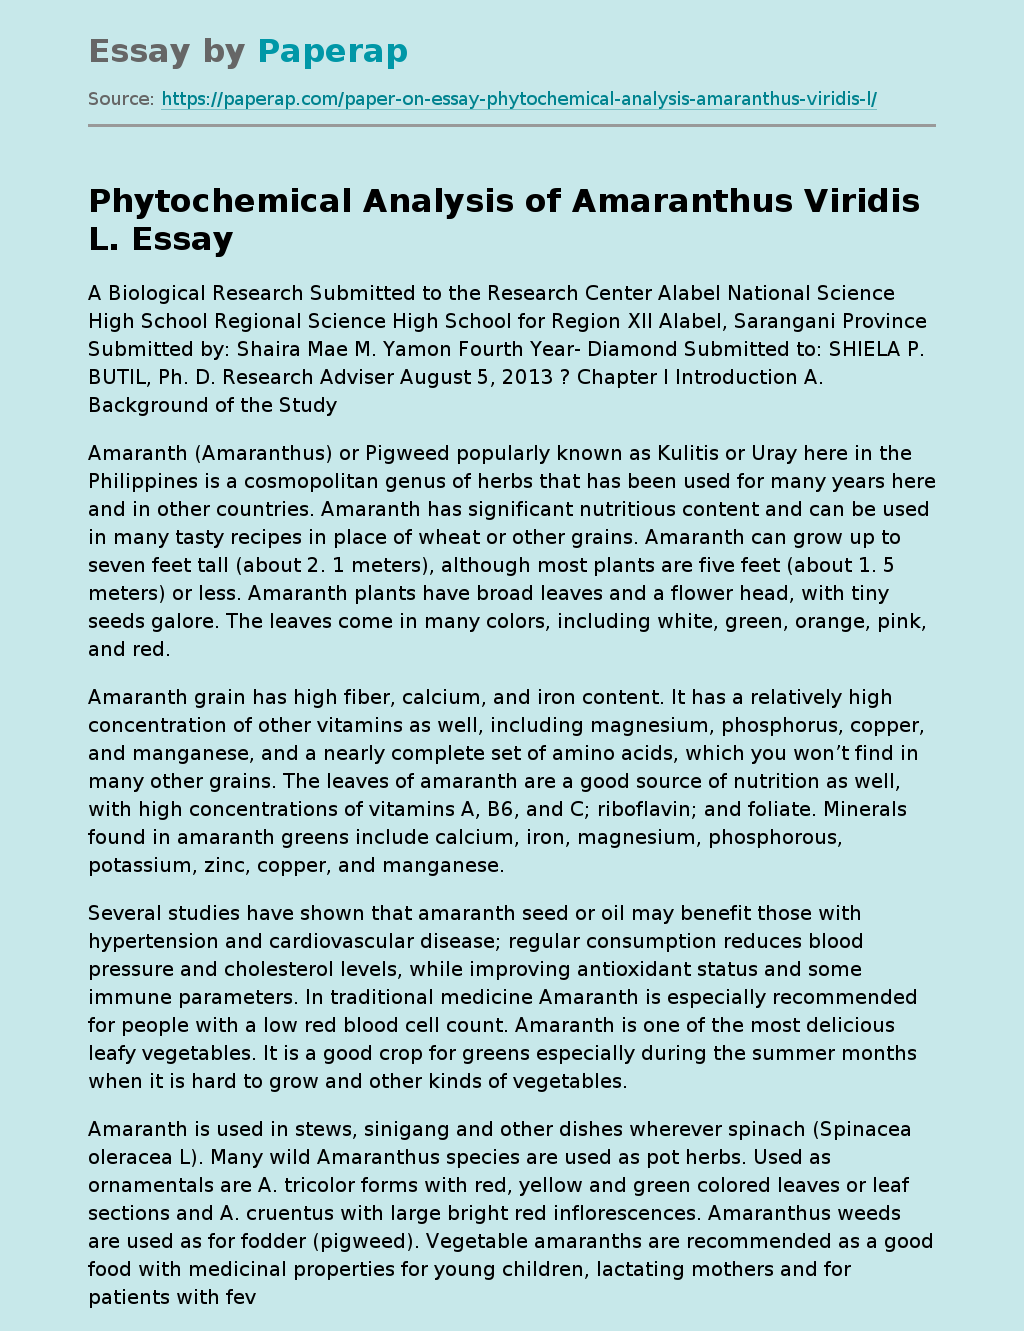 Phytochemical Analysis of Amaranthus Viridis L.